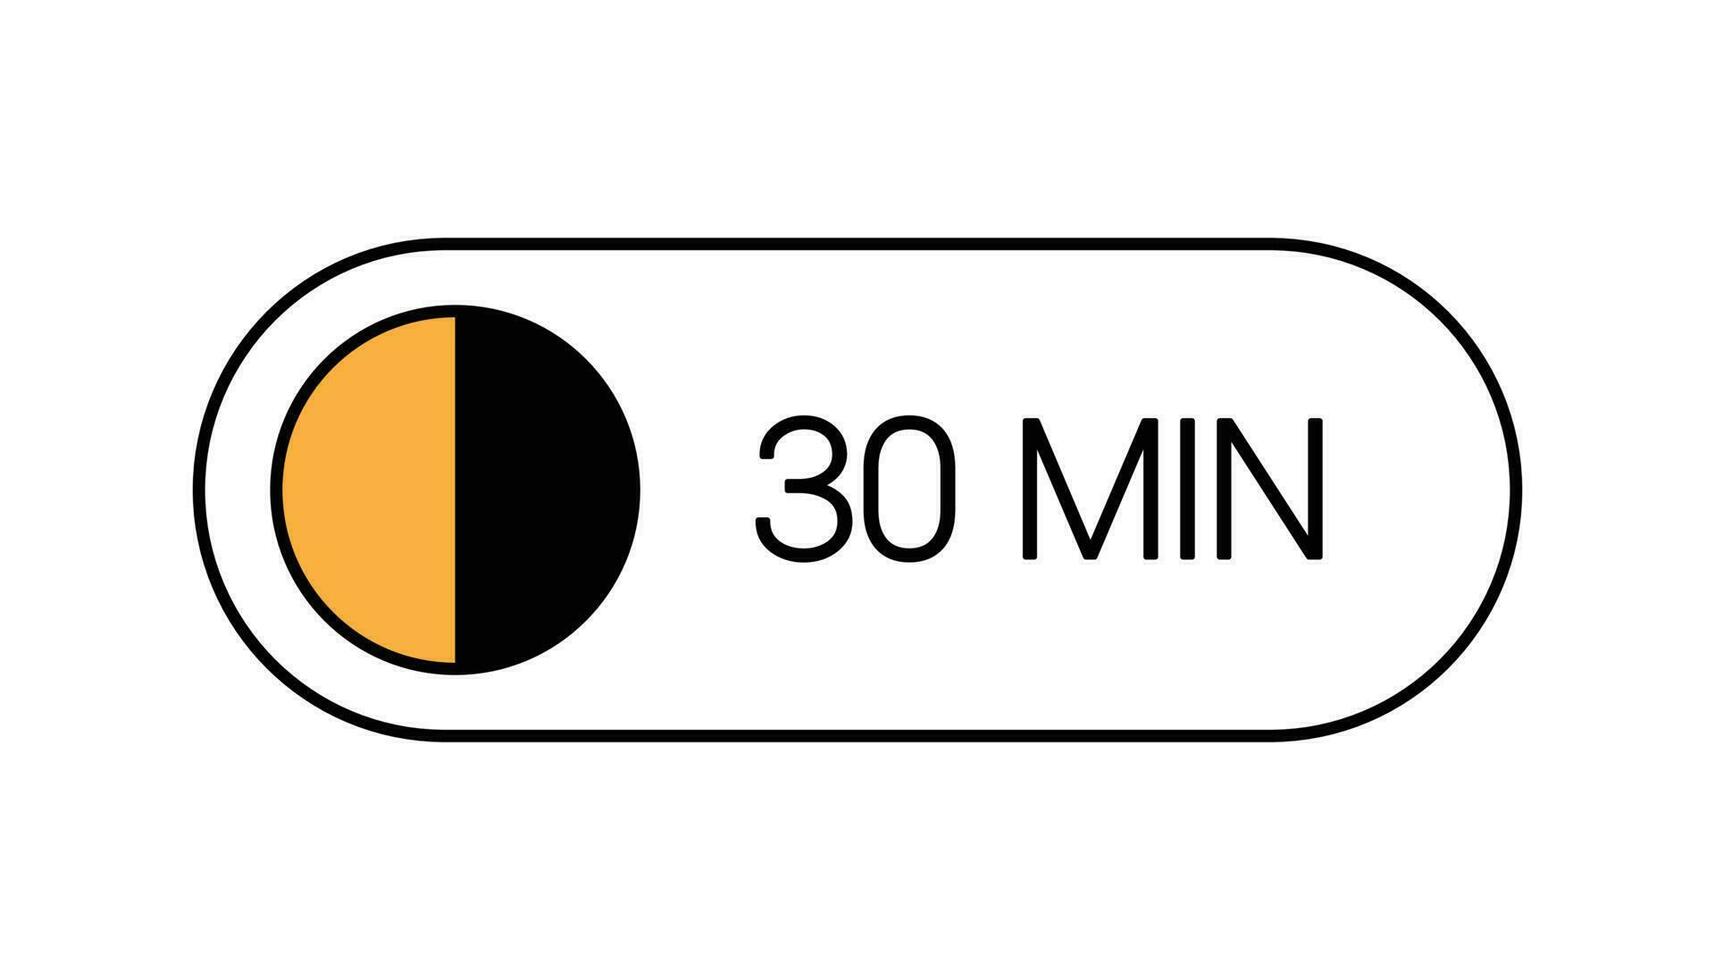 dertig min timer knop, ui klok tonen 30 minuten label. Koken tijd, stopwatch, countdown indicatie vector